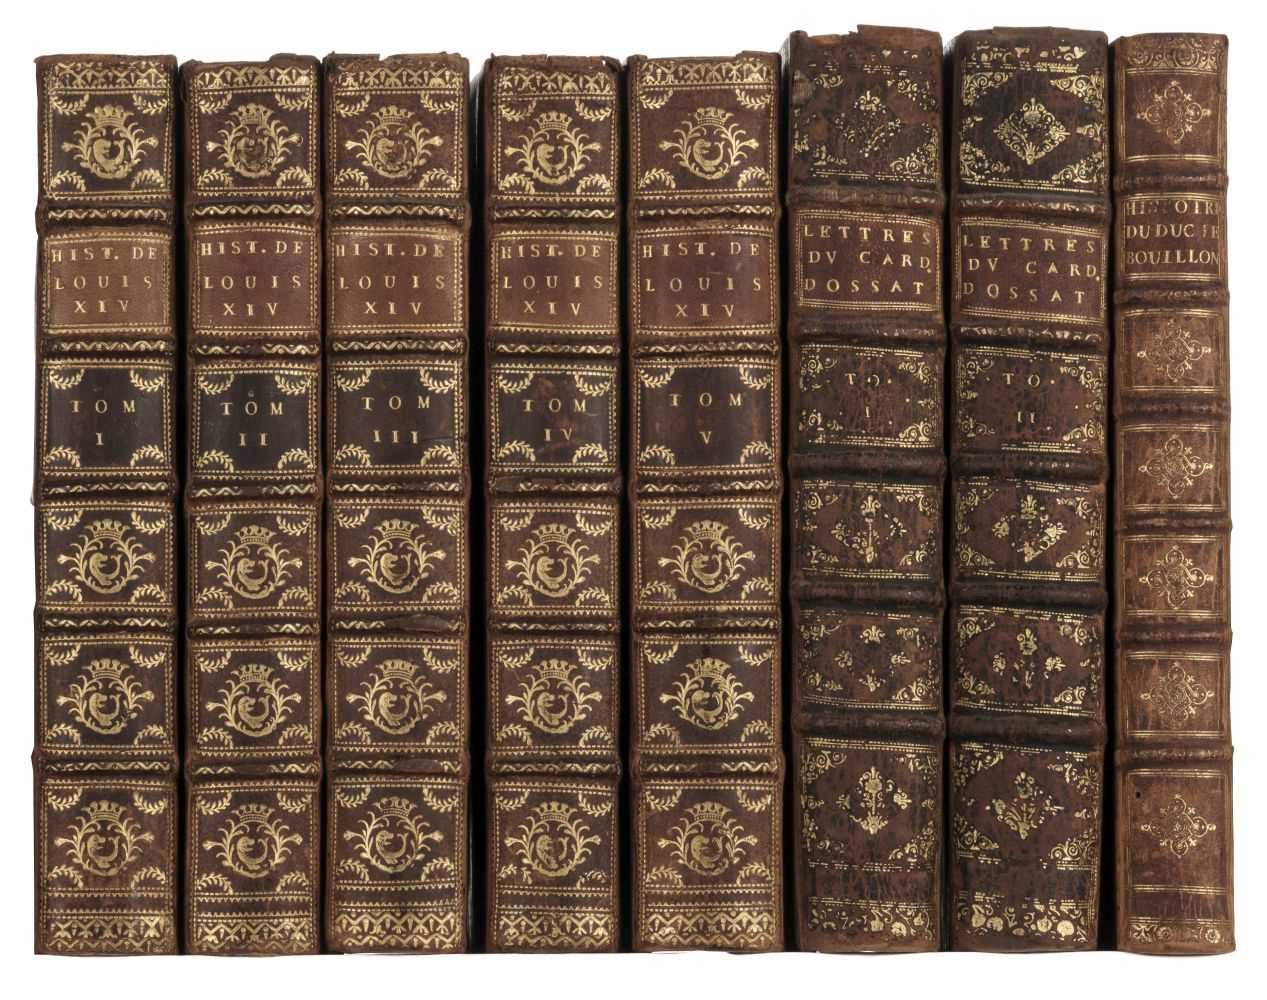 Lot 92 - La Mothe (N.). Histoire de la vie et du regne de Louis xiv, 5 volumes, The Hague, 1740